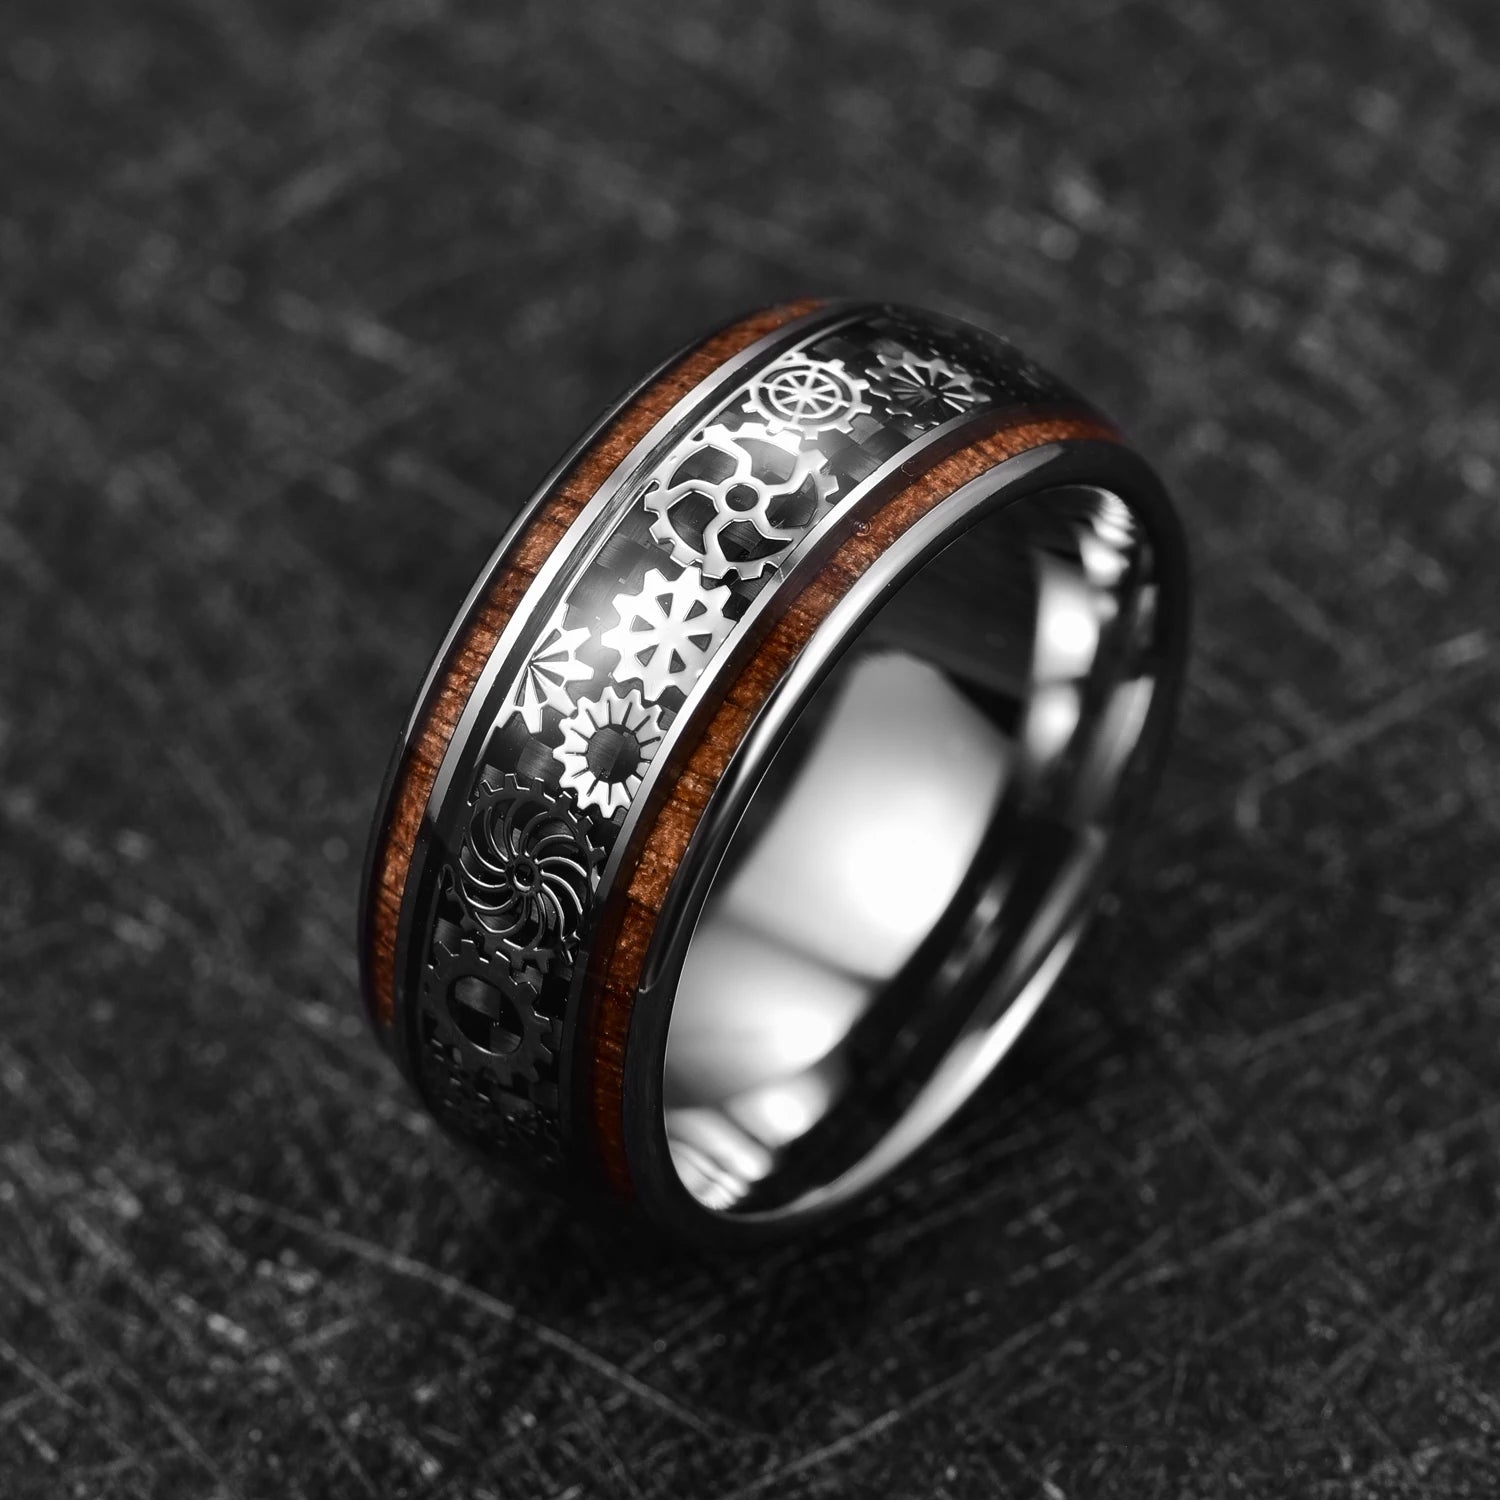 10mm Inlaid Wood Grain & Gear Pattern Tungsten Men's Ring